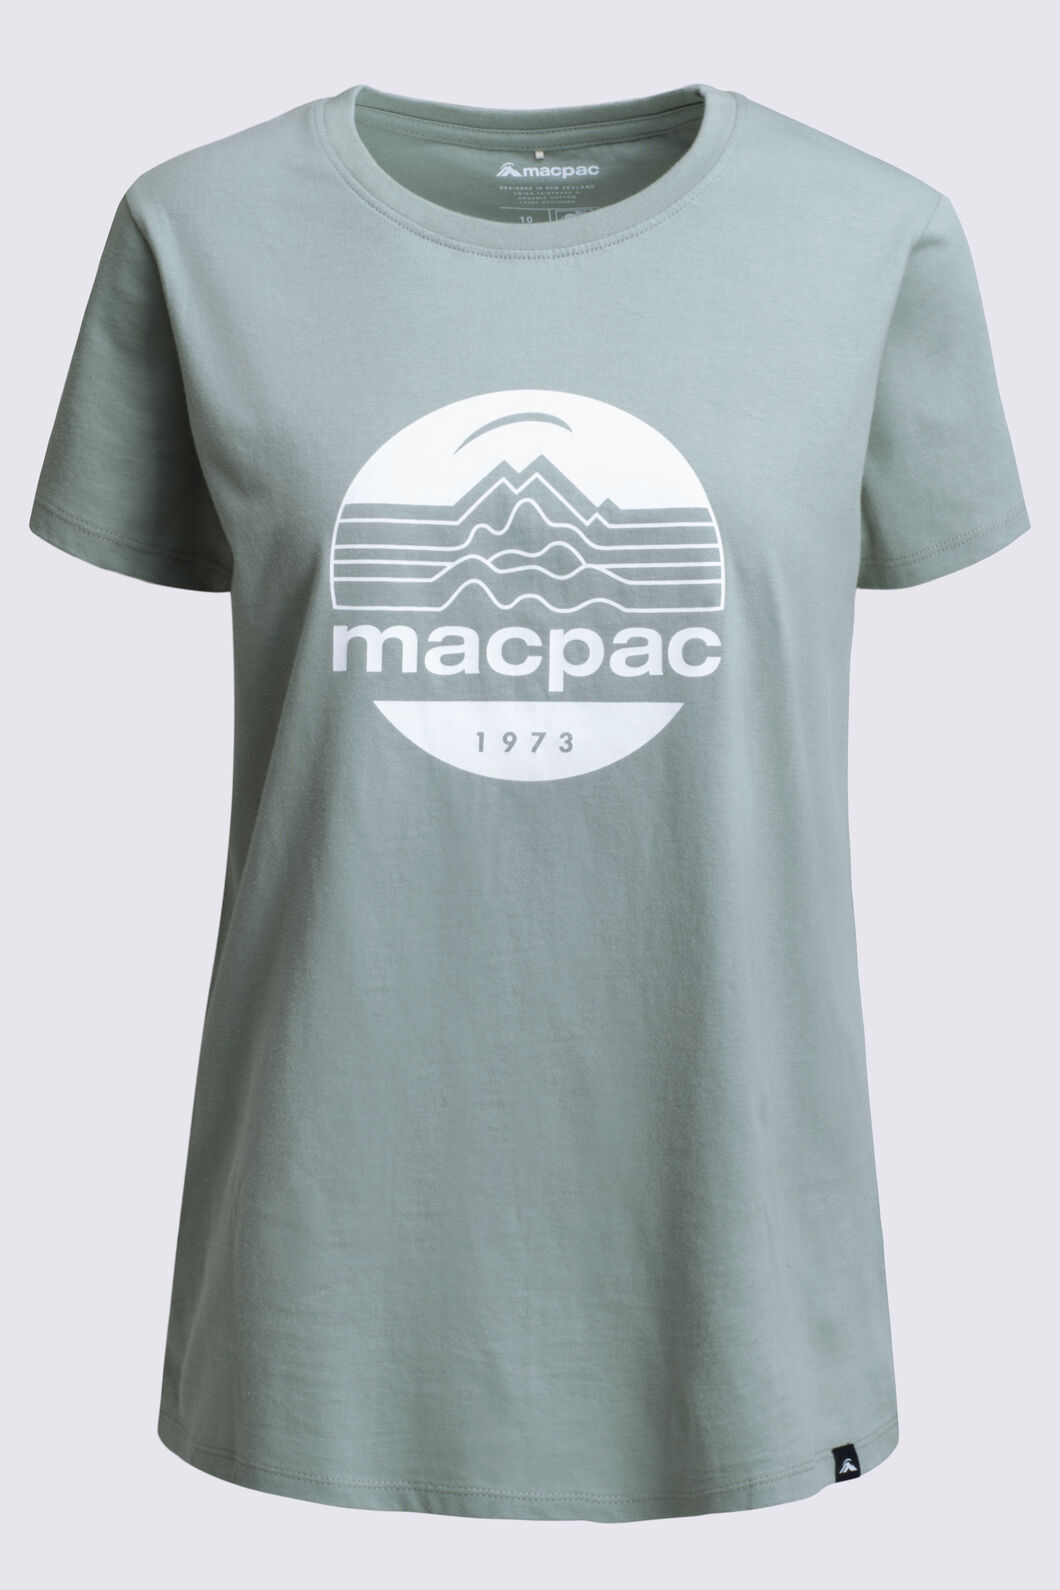 Macpac Women's Retro Graphic T-Shirt | Macpac